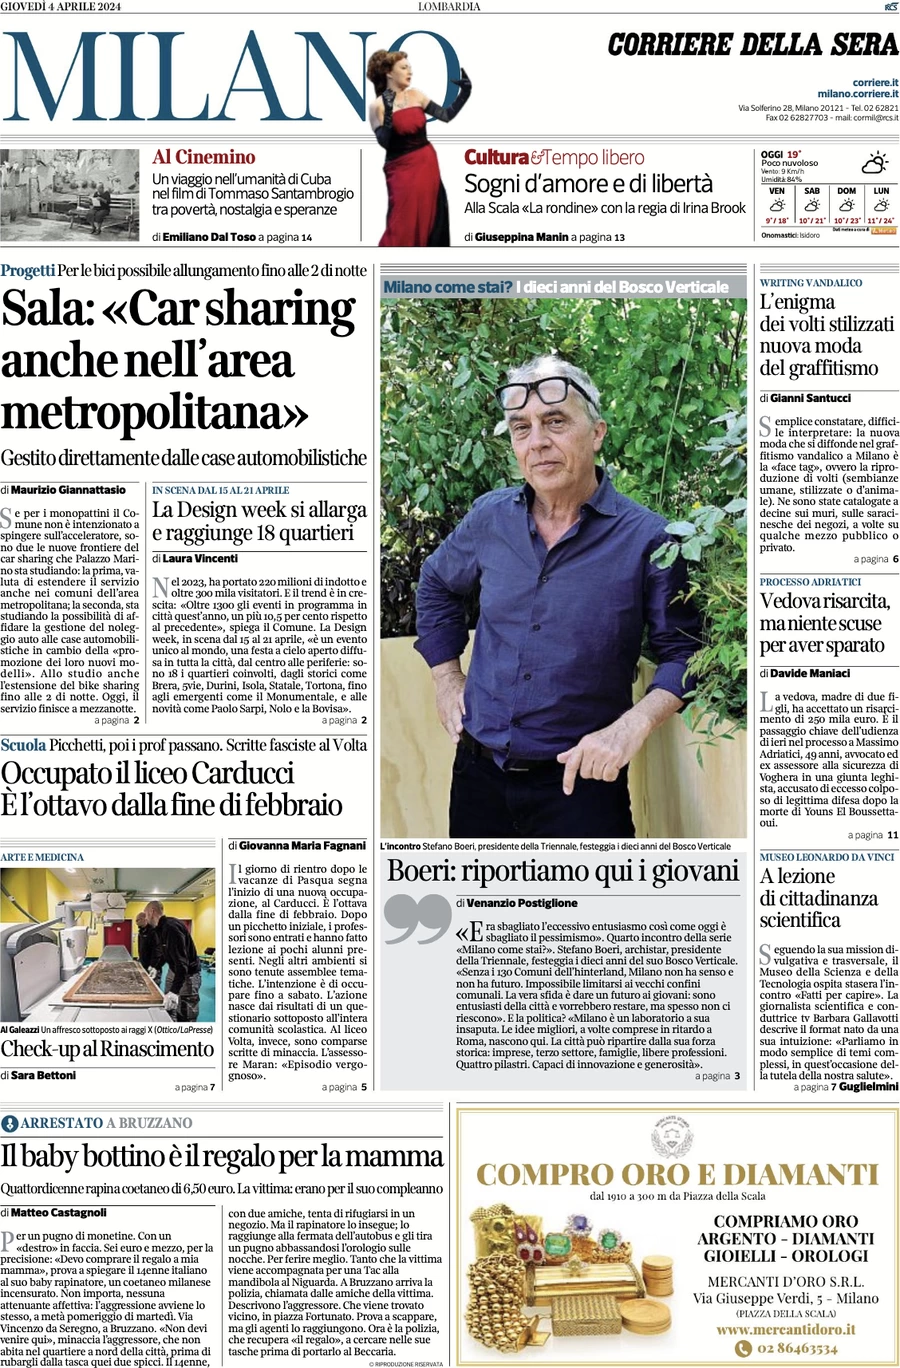 anteprima della prima pagina di corriere-della-sera-milano del 04/04/2024